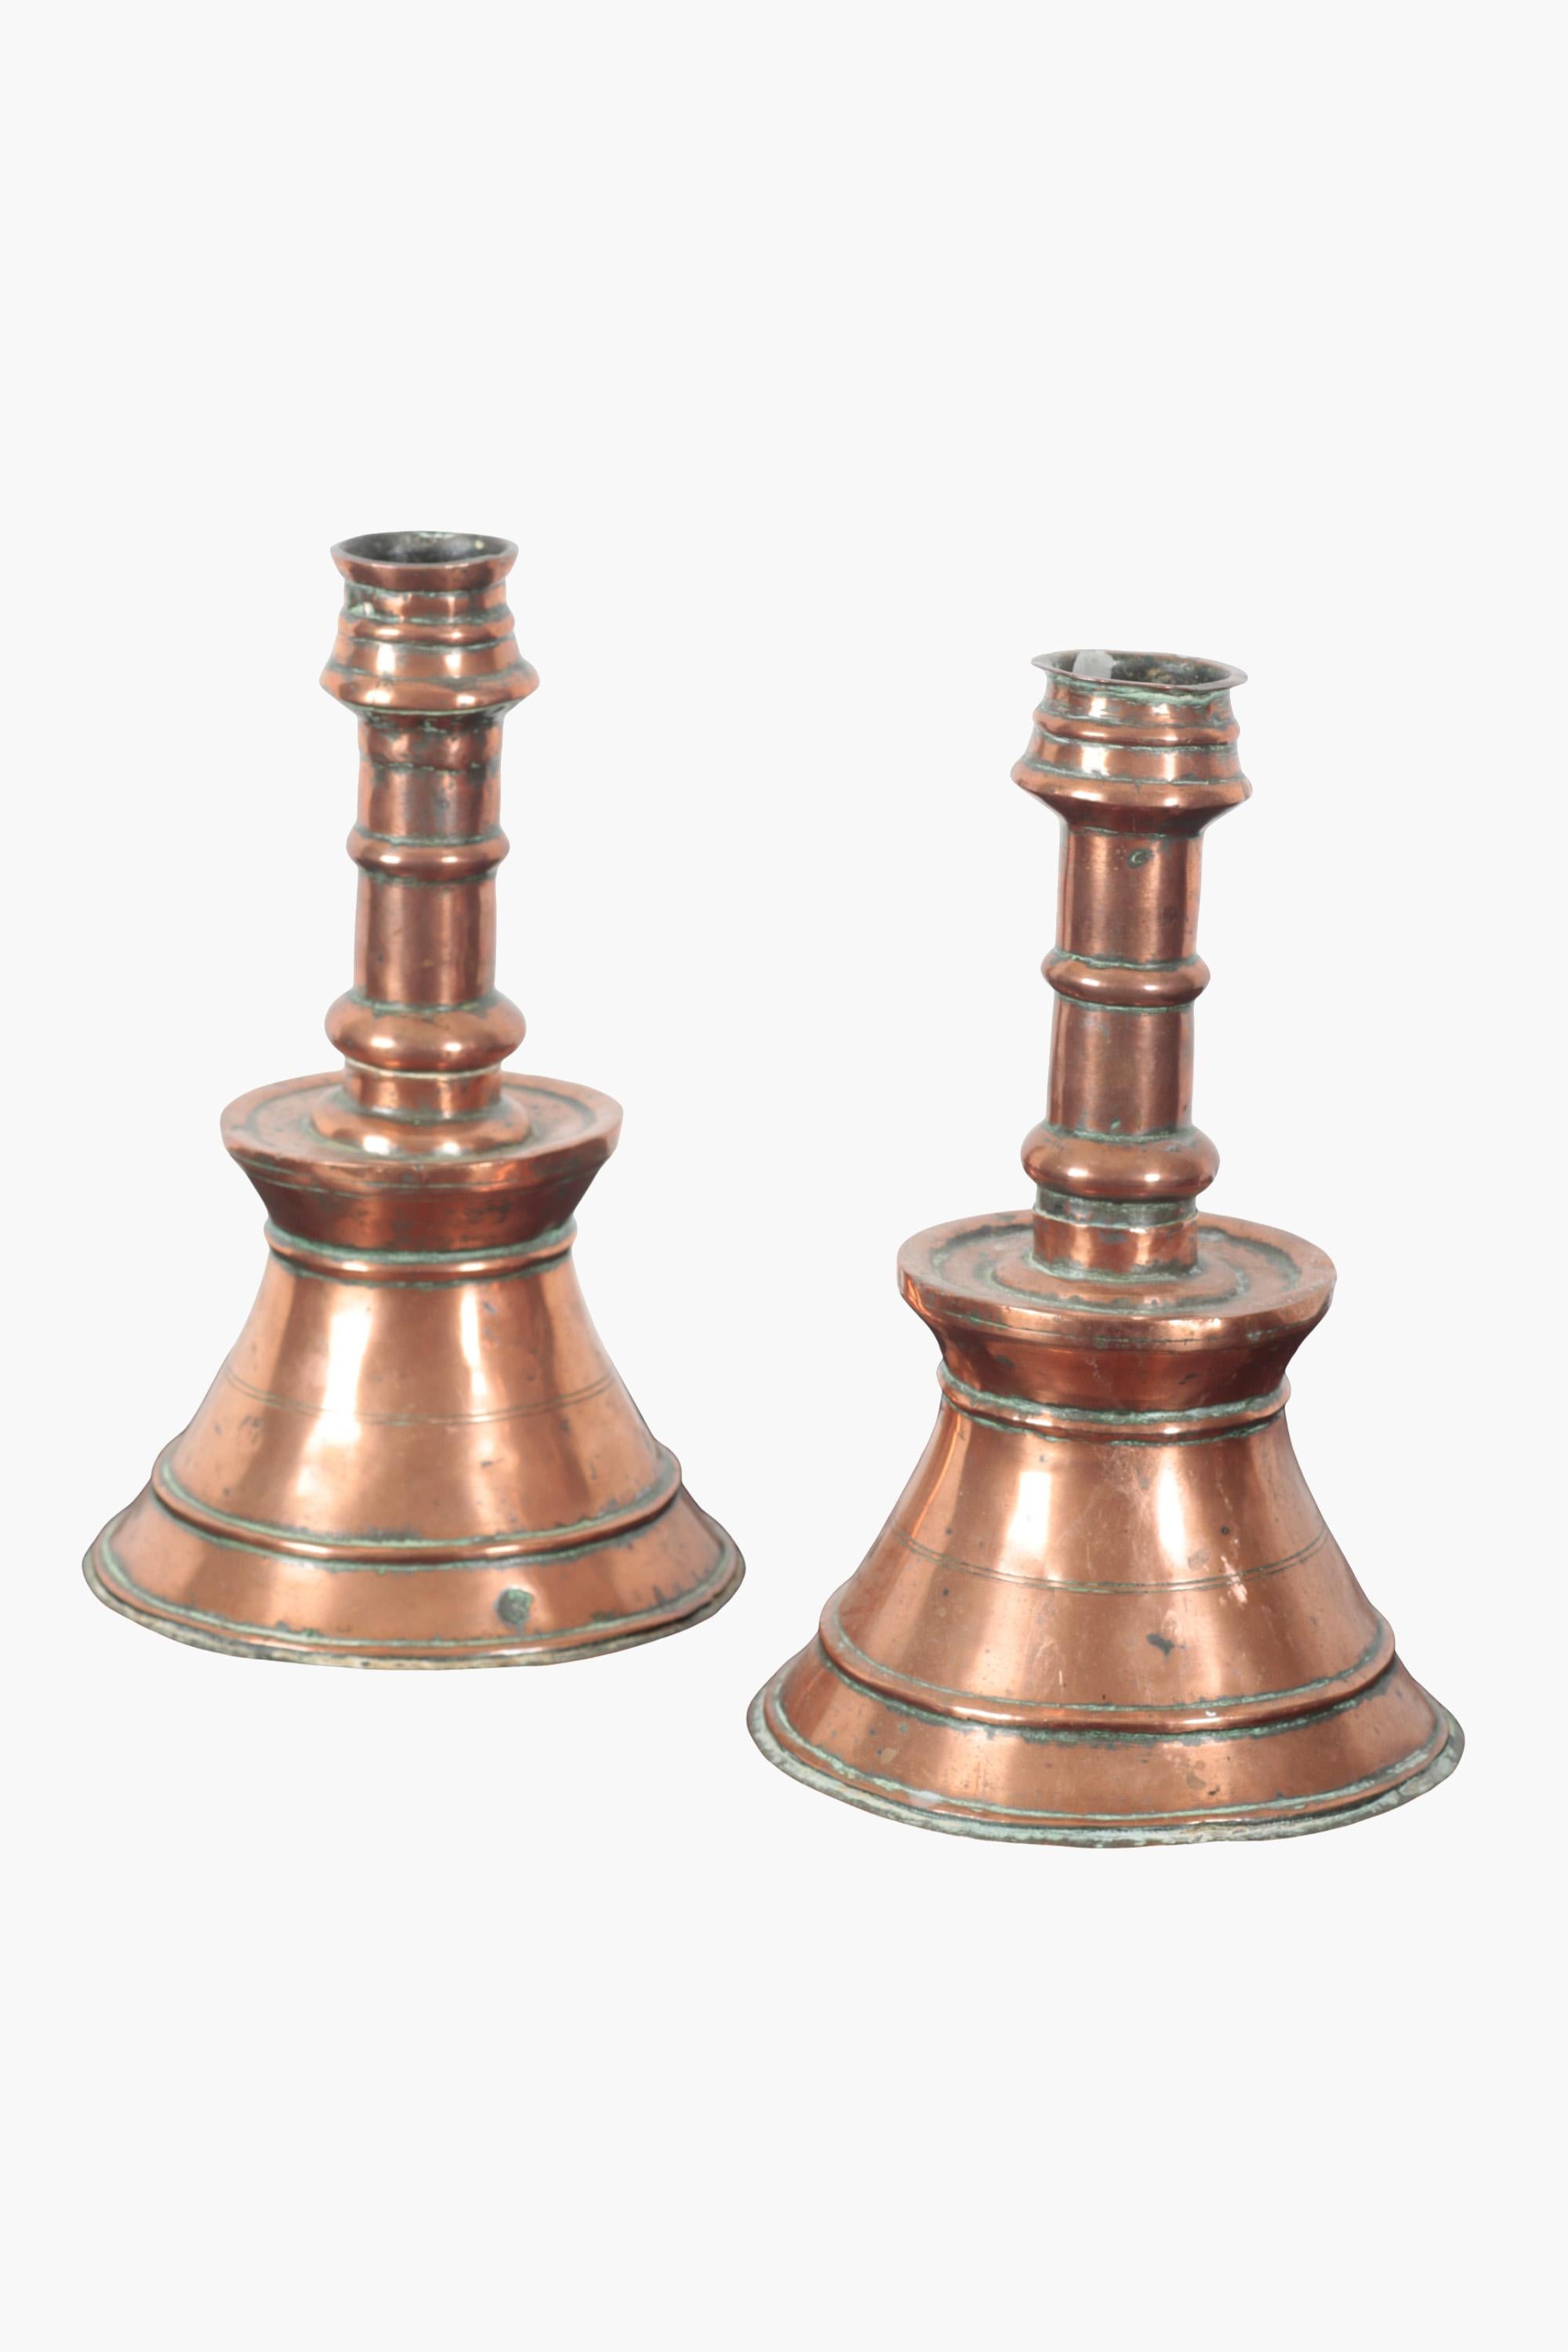 Deux chandeliers en cuivre de forme ottomane typique avec des tiges tournées sur une base étagée et effilée. Chaque base s'élève jusqu'à une bobèche évasée (un bac de récupération de la cire fondue).

Réalisé au XIXe siècle, sur la base de designs